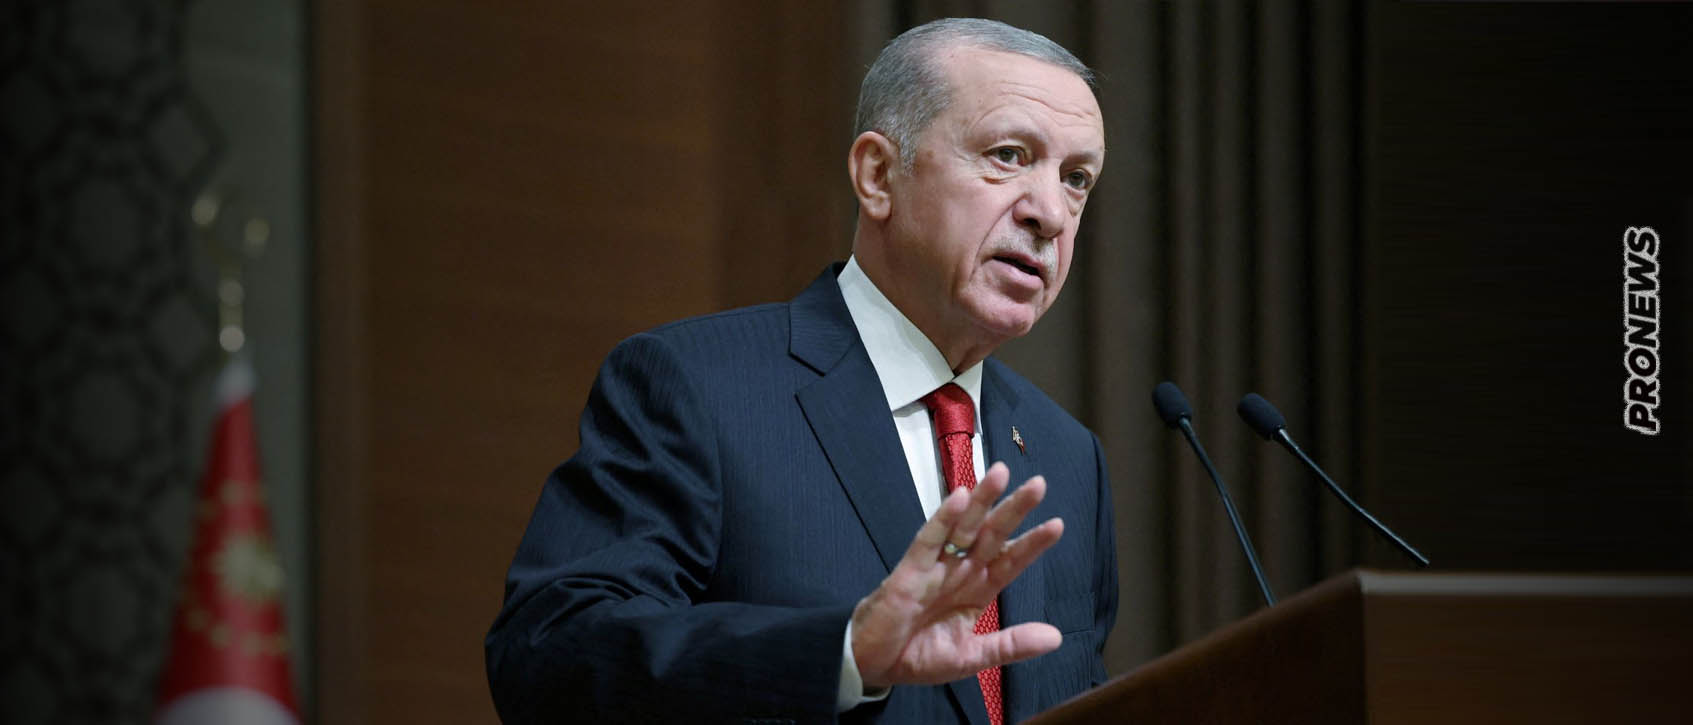 Τουρκία: Η κυβέρνηση Ρ.Τ.Ερντογάν αυξάνει τον κατώτατο μισθό κατά 49%